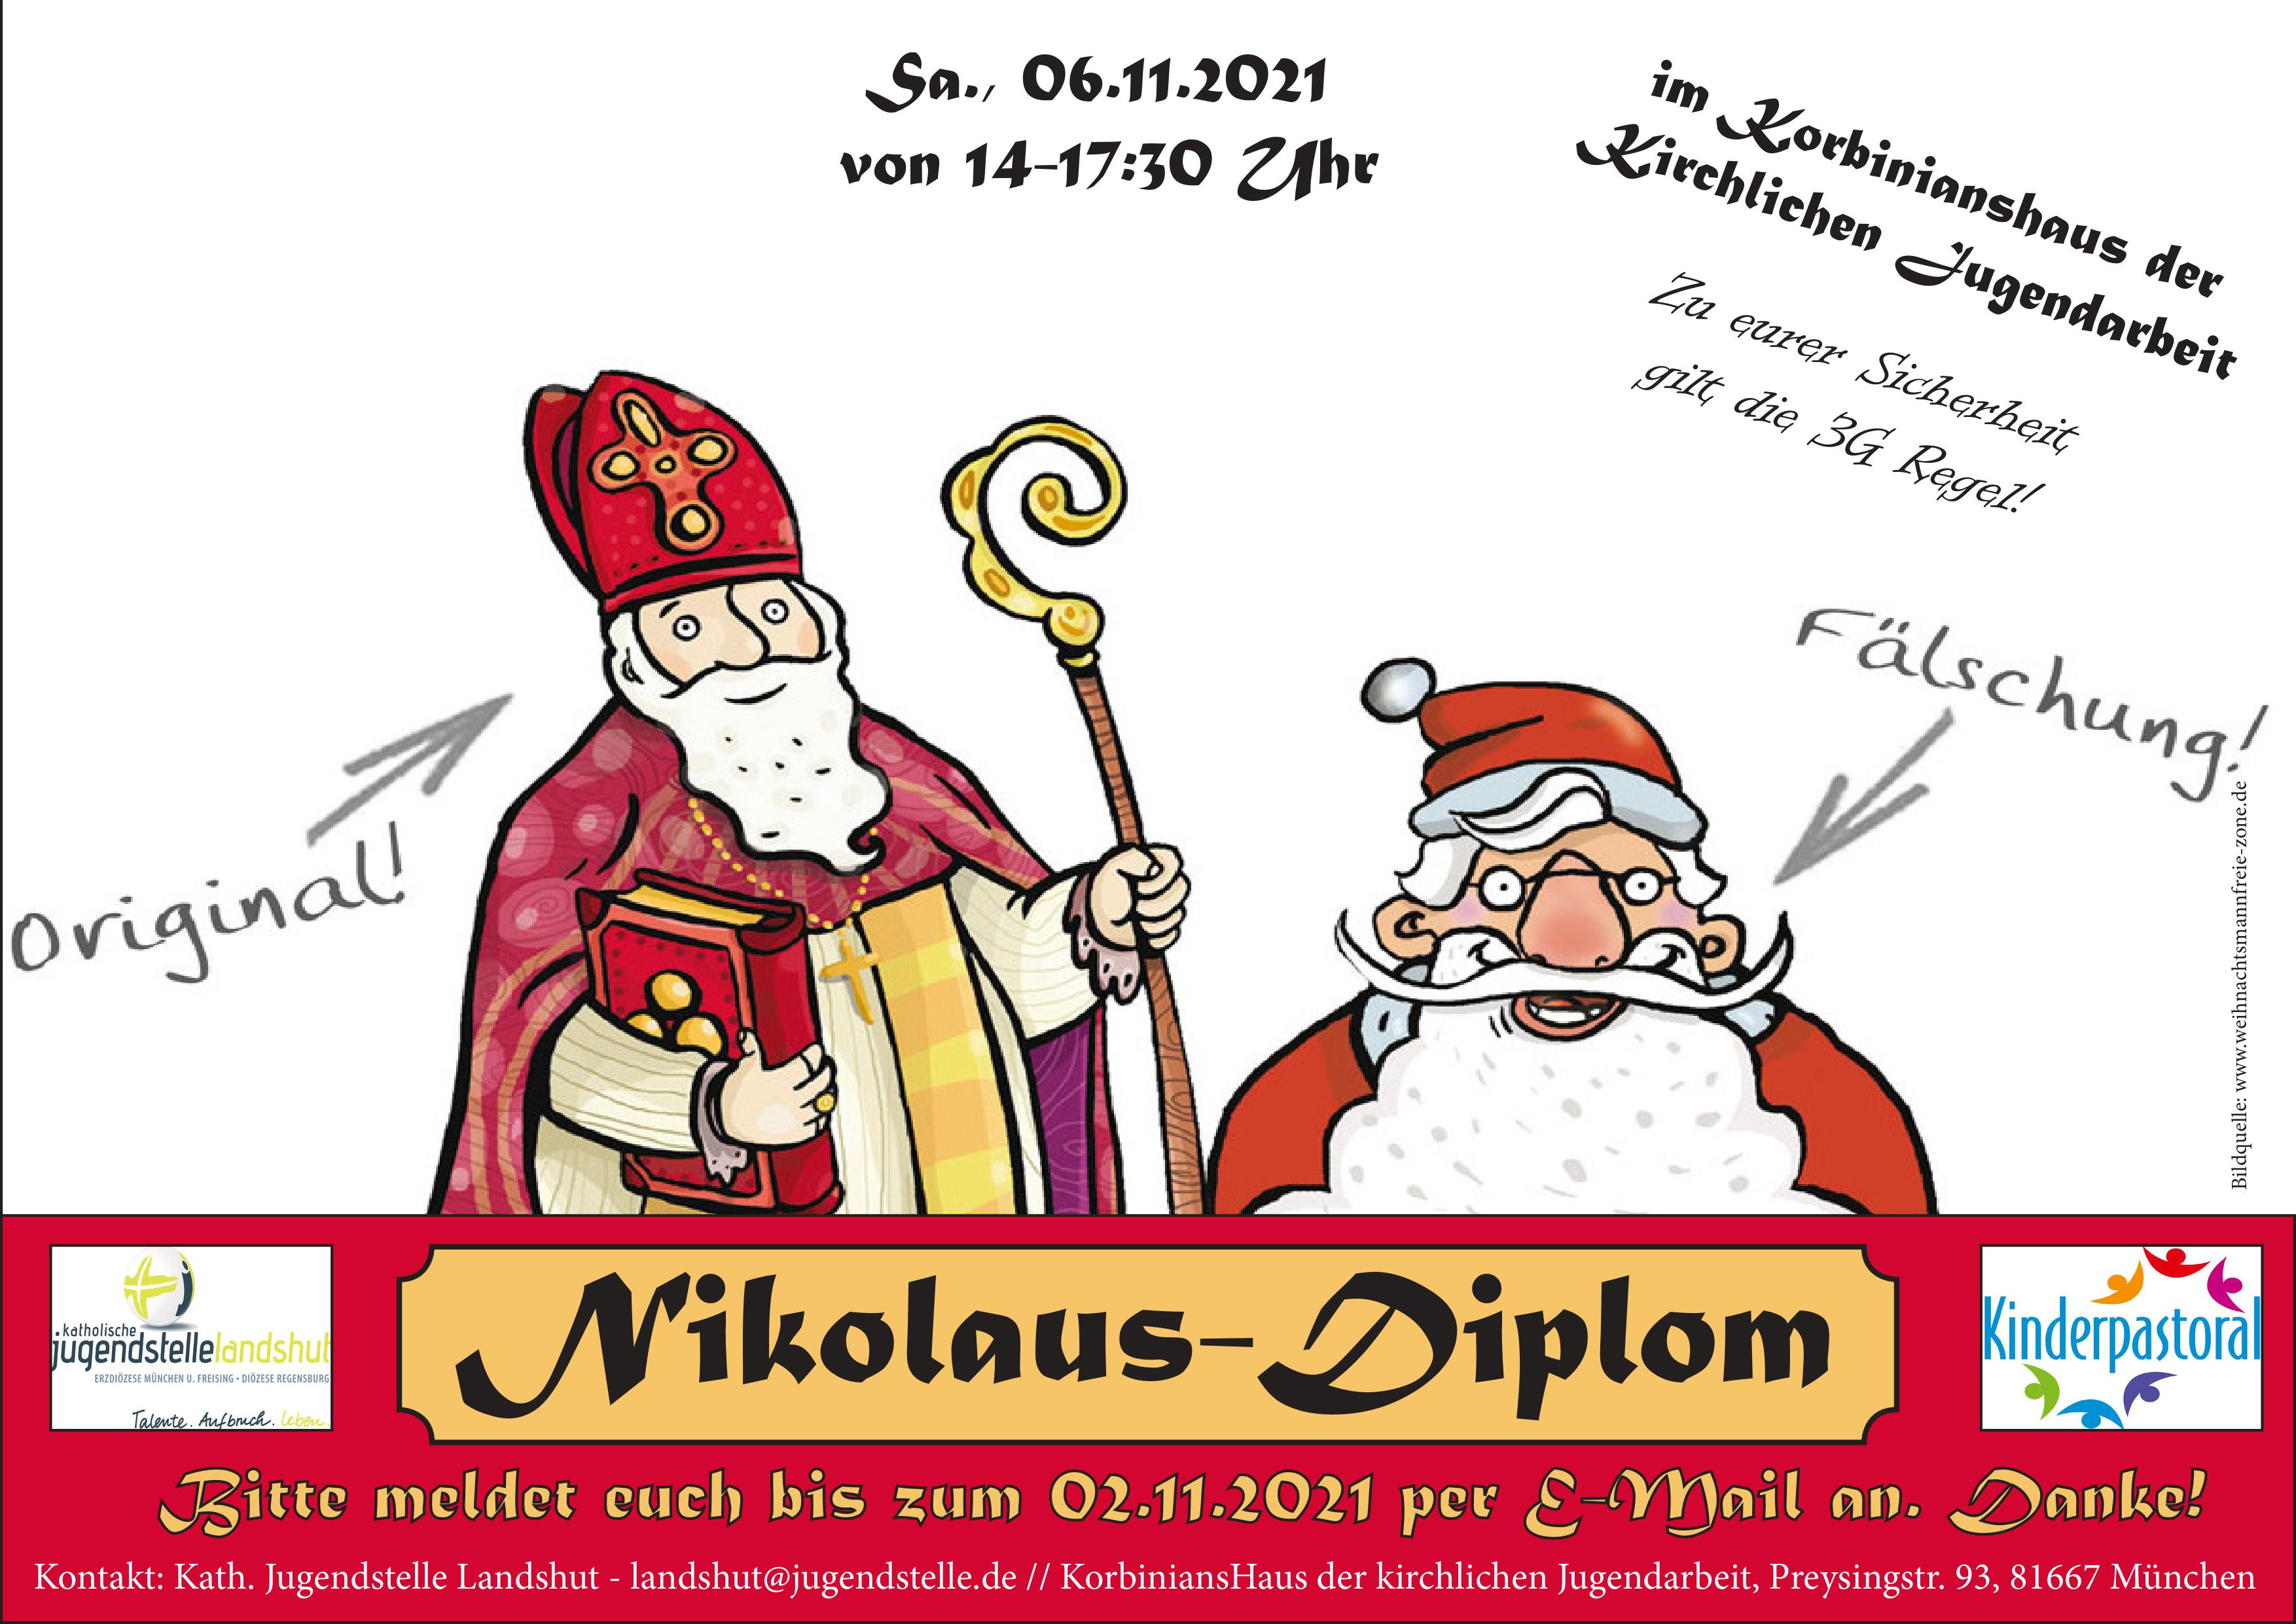 Nikolaus, NIkolaus-Diplom,